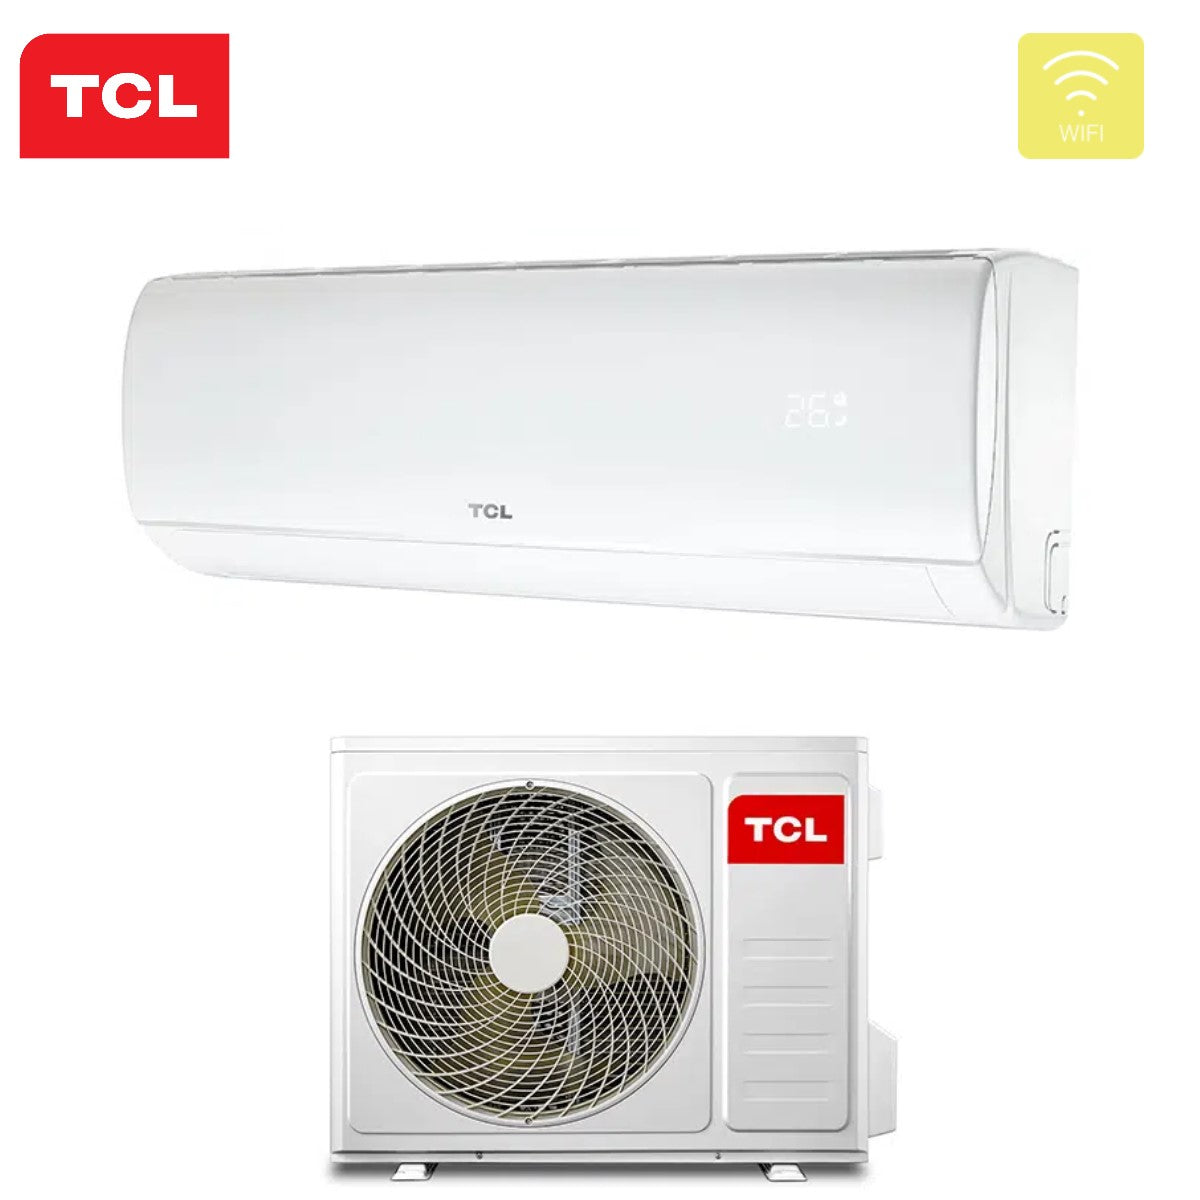 immagine-3-tcl-climatizzatore-condizionatore-tcl-inverter-serie-elite-f1-12000-btu-s12f1s0t-r-32-wi-fi-integrato-classe-aa